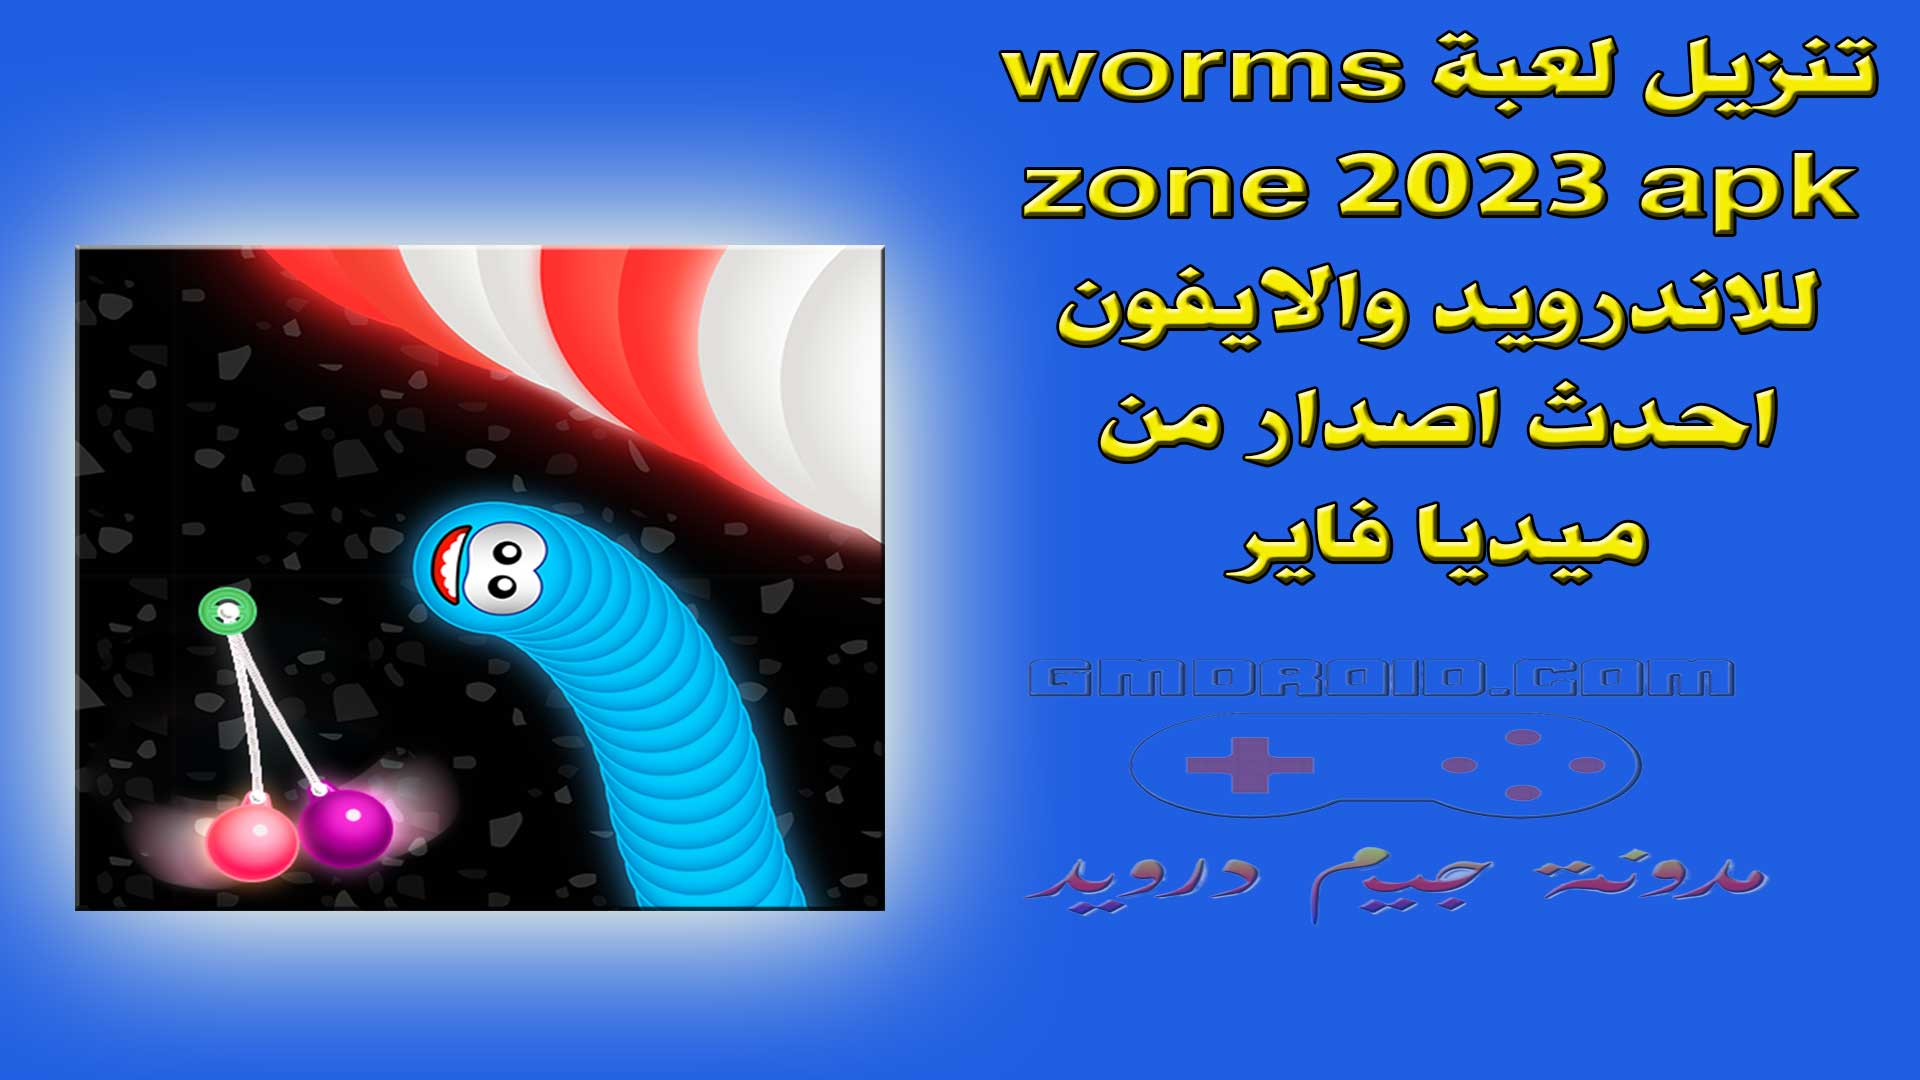 تنزيل لعبة worms zone 2023 apk للاندرويد والايفون احدث اصدار من ميديا فاير